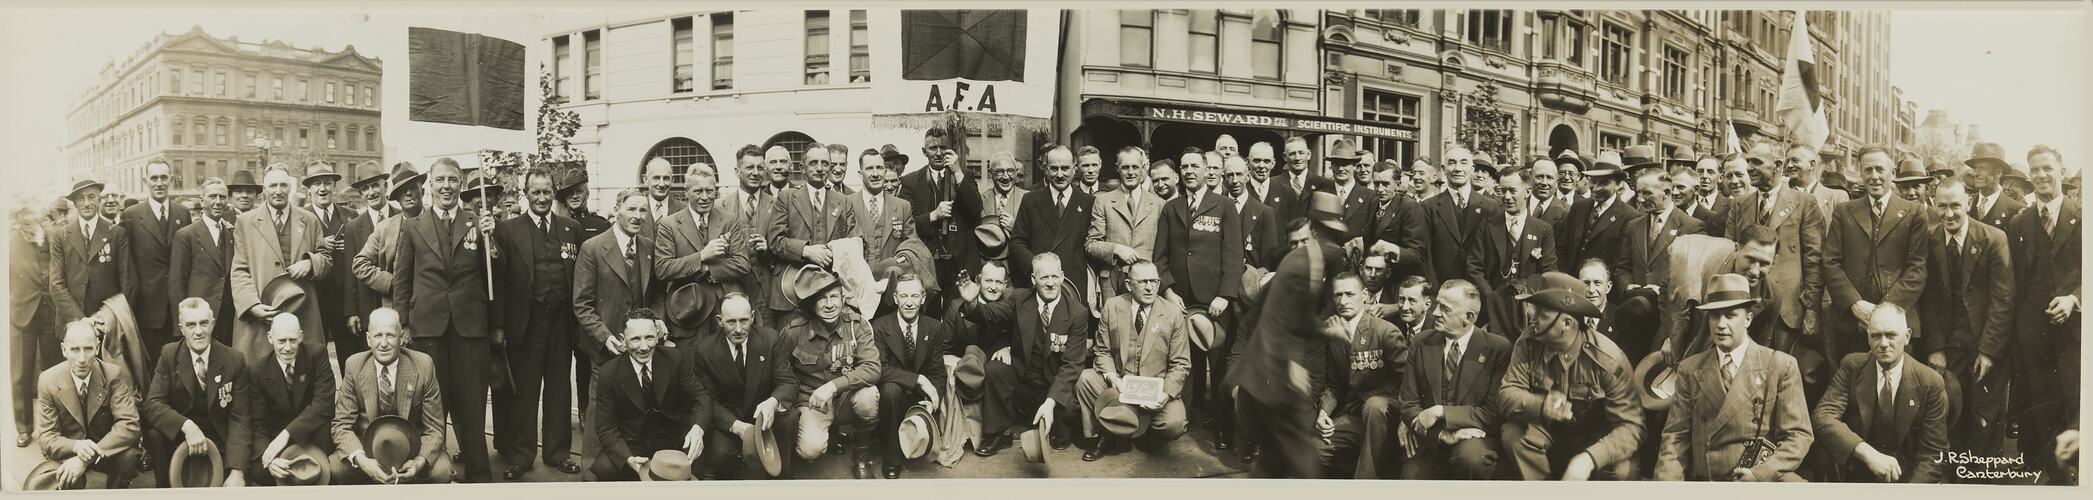 45th Battalion, Anzac Day Marchers, Melbourne, circa 1930s